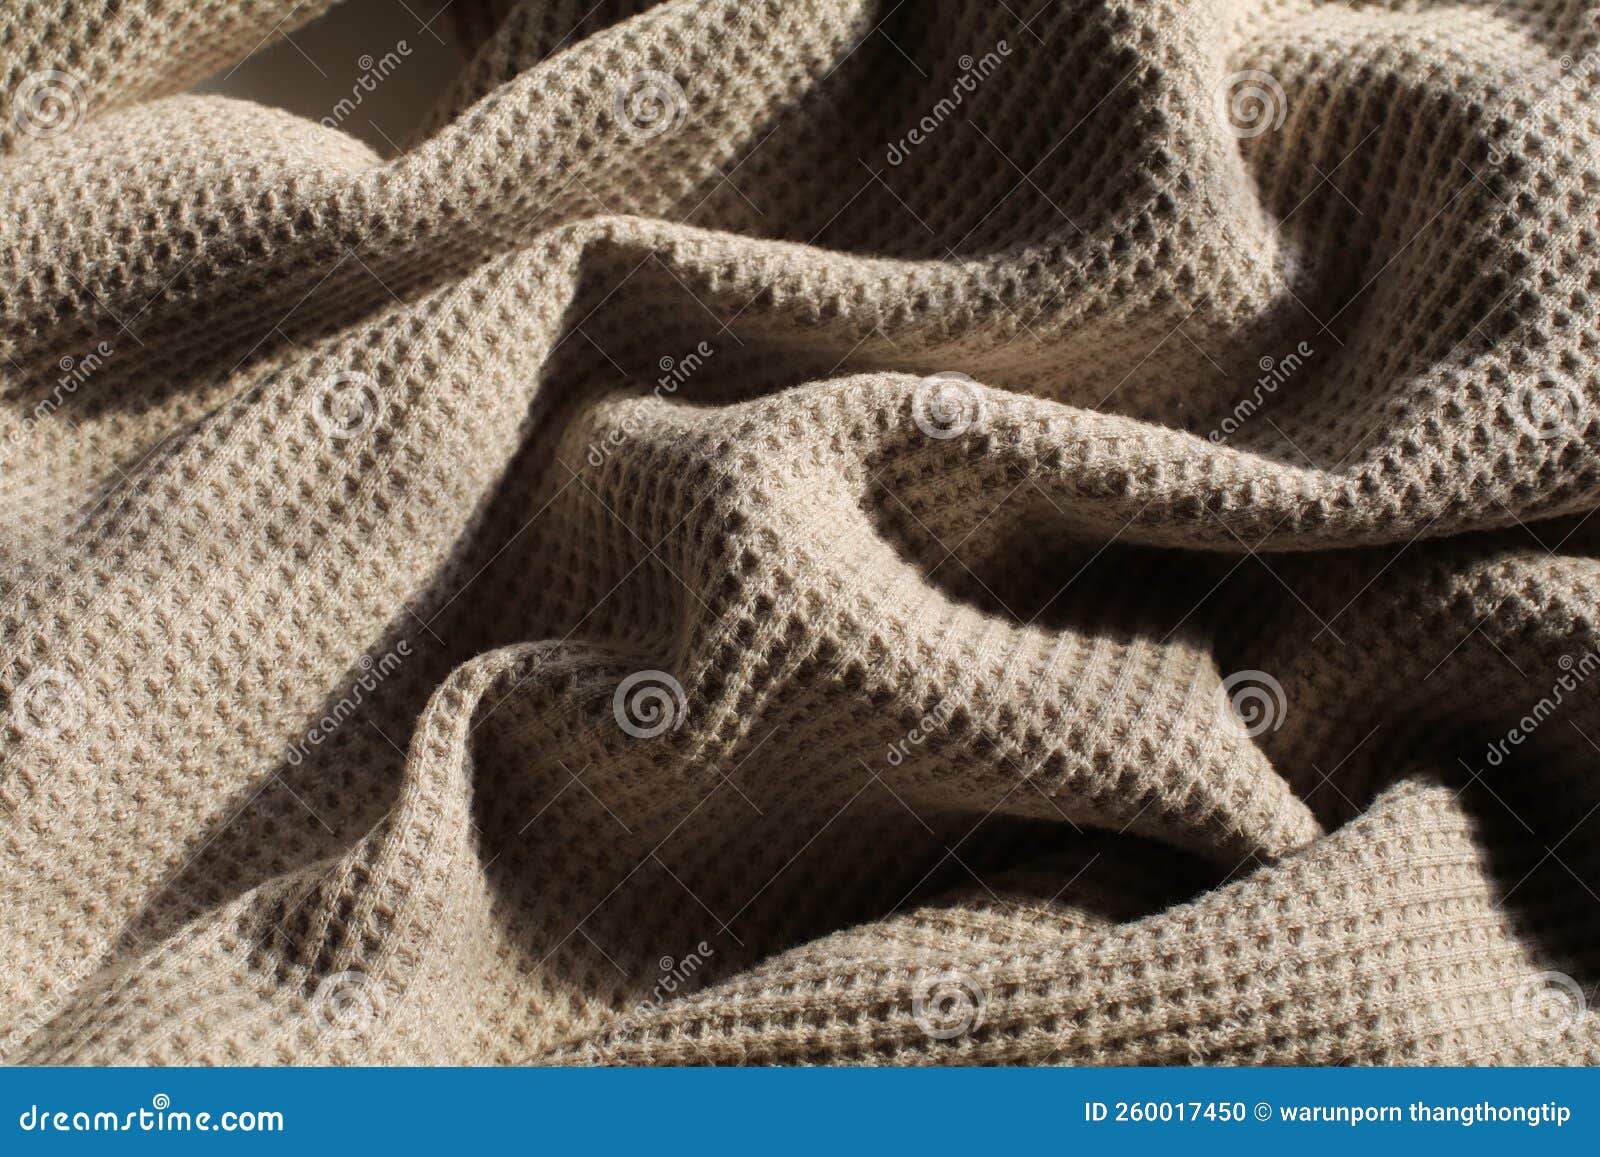 Waffle knit - Knits - Fabric